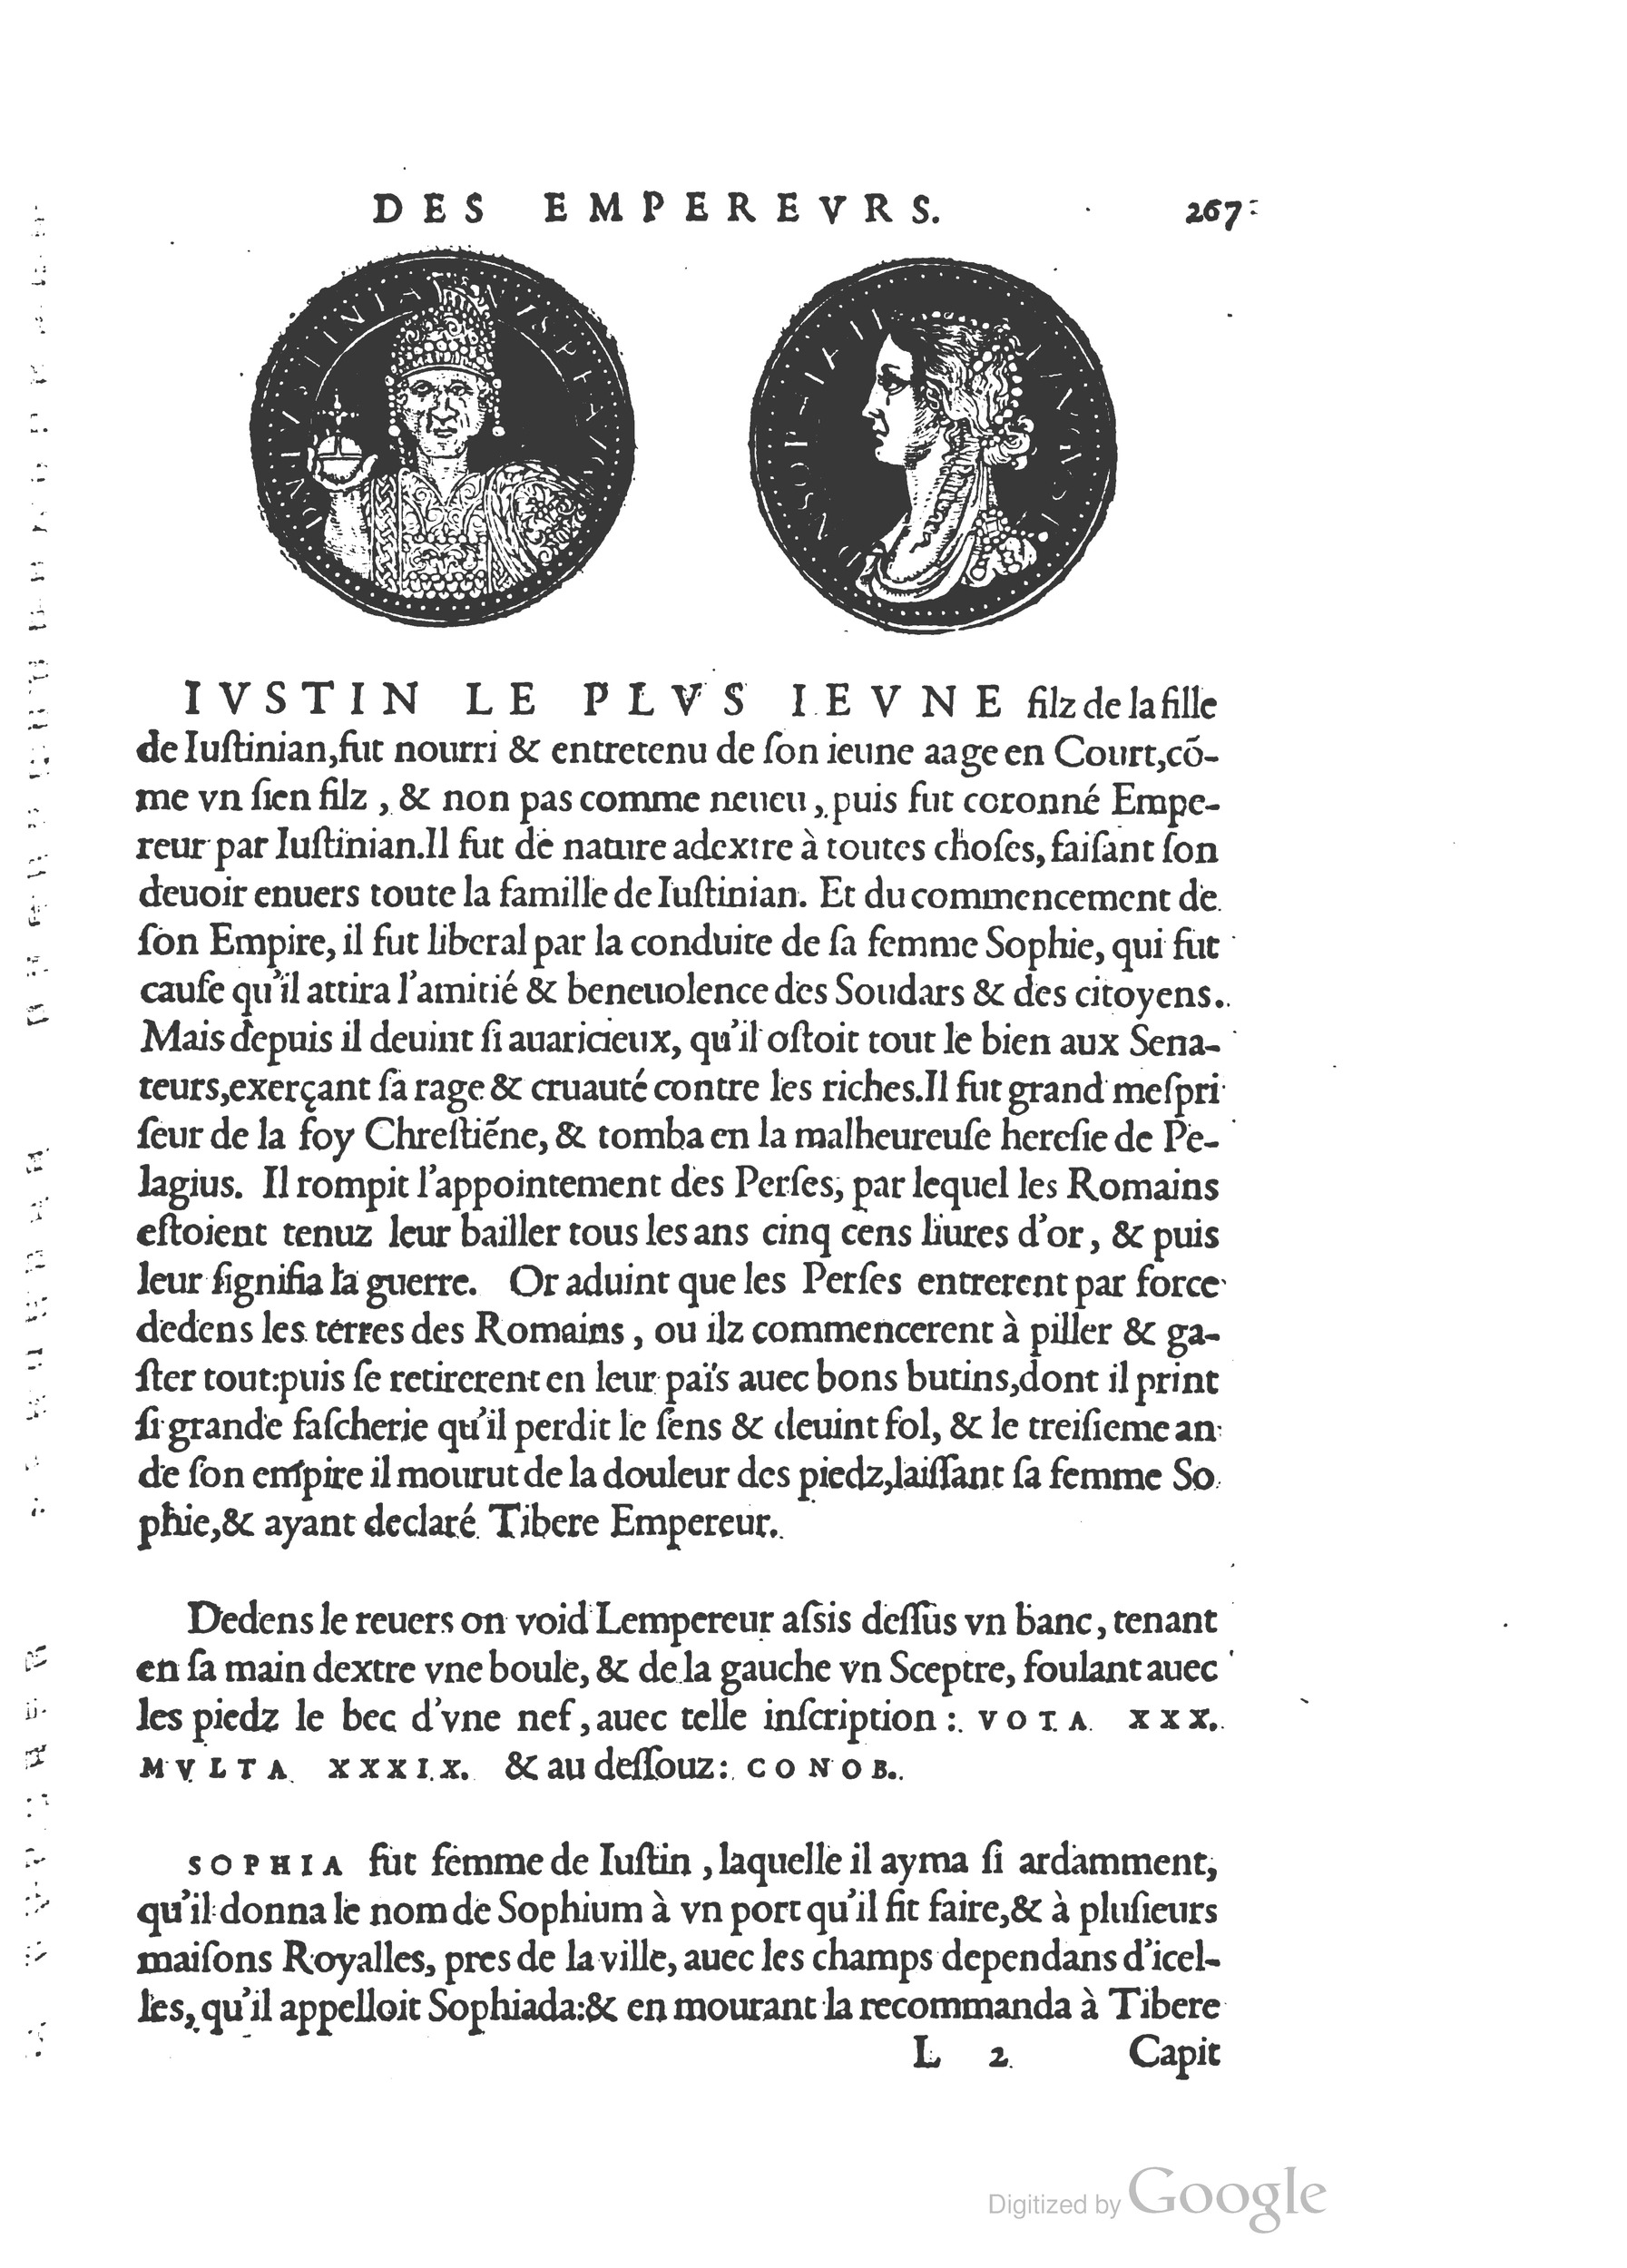 1553 Epitome du trésor des antiquités Strada Guérin_BM Lyon_Page_300.jpg